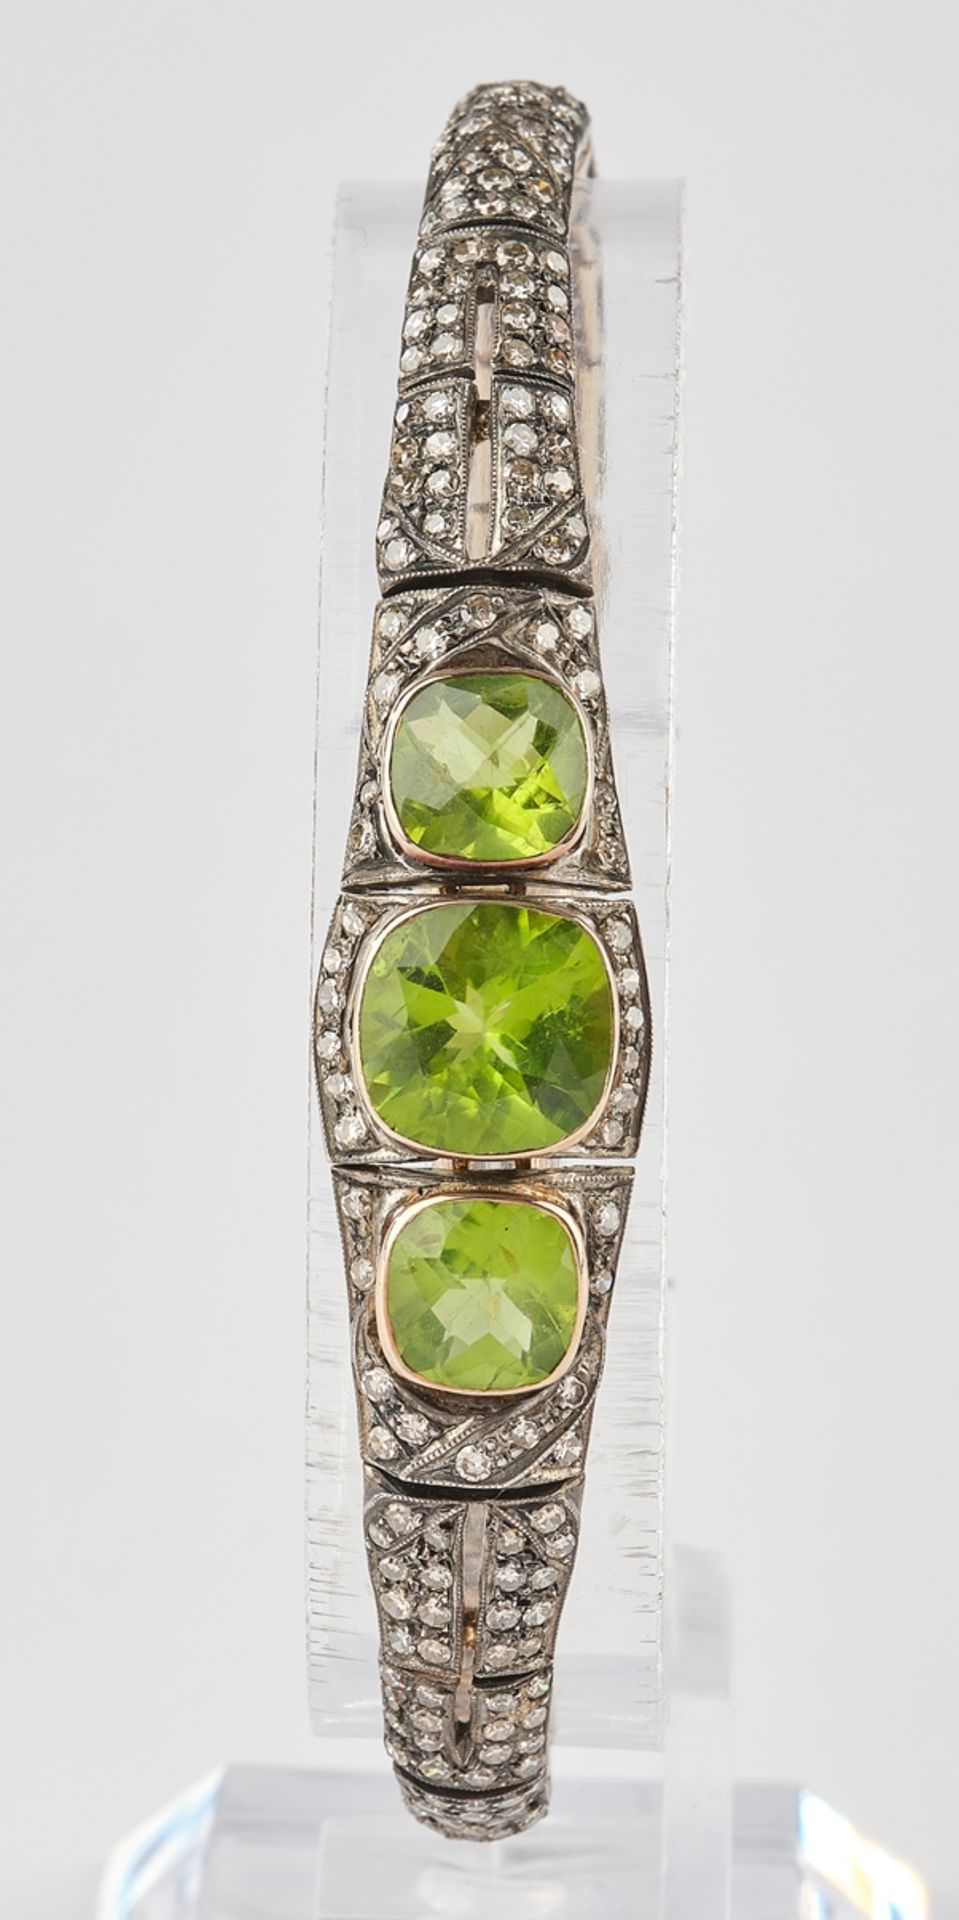 Armband, Roségold 750, Diamanten zus. ca. 3.50 ct., in Sterling gefasst, 3 Peridots zus. ca. 7.80 c - Bild 2 aus 4